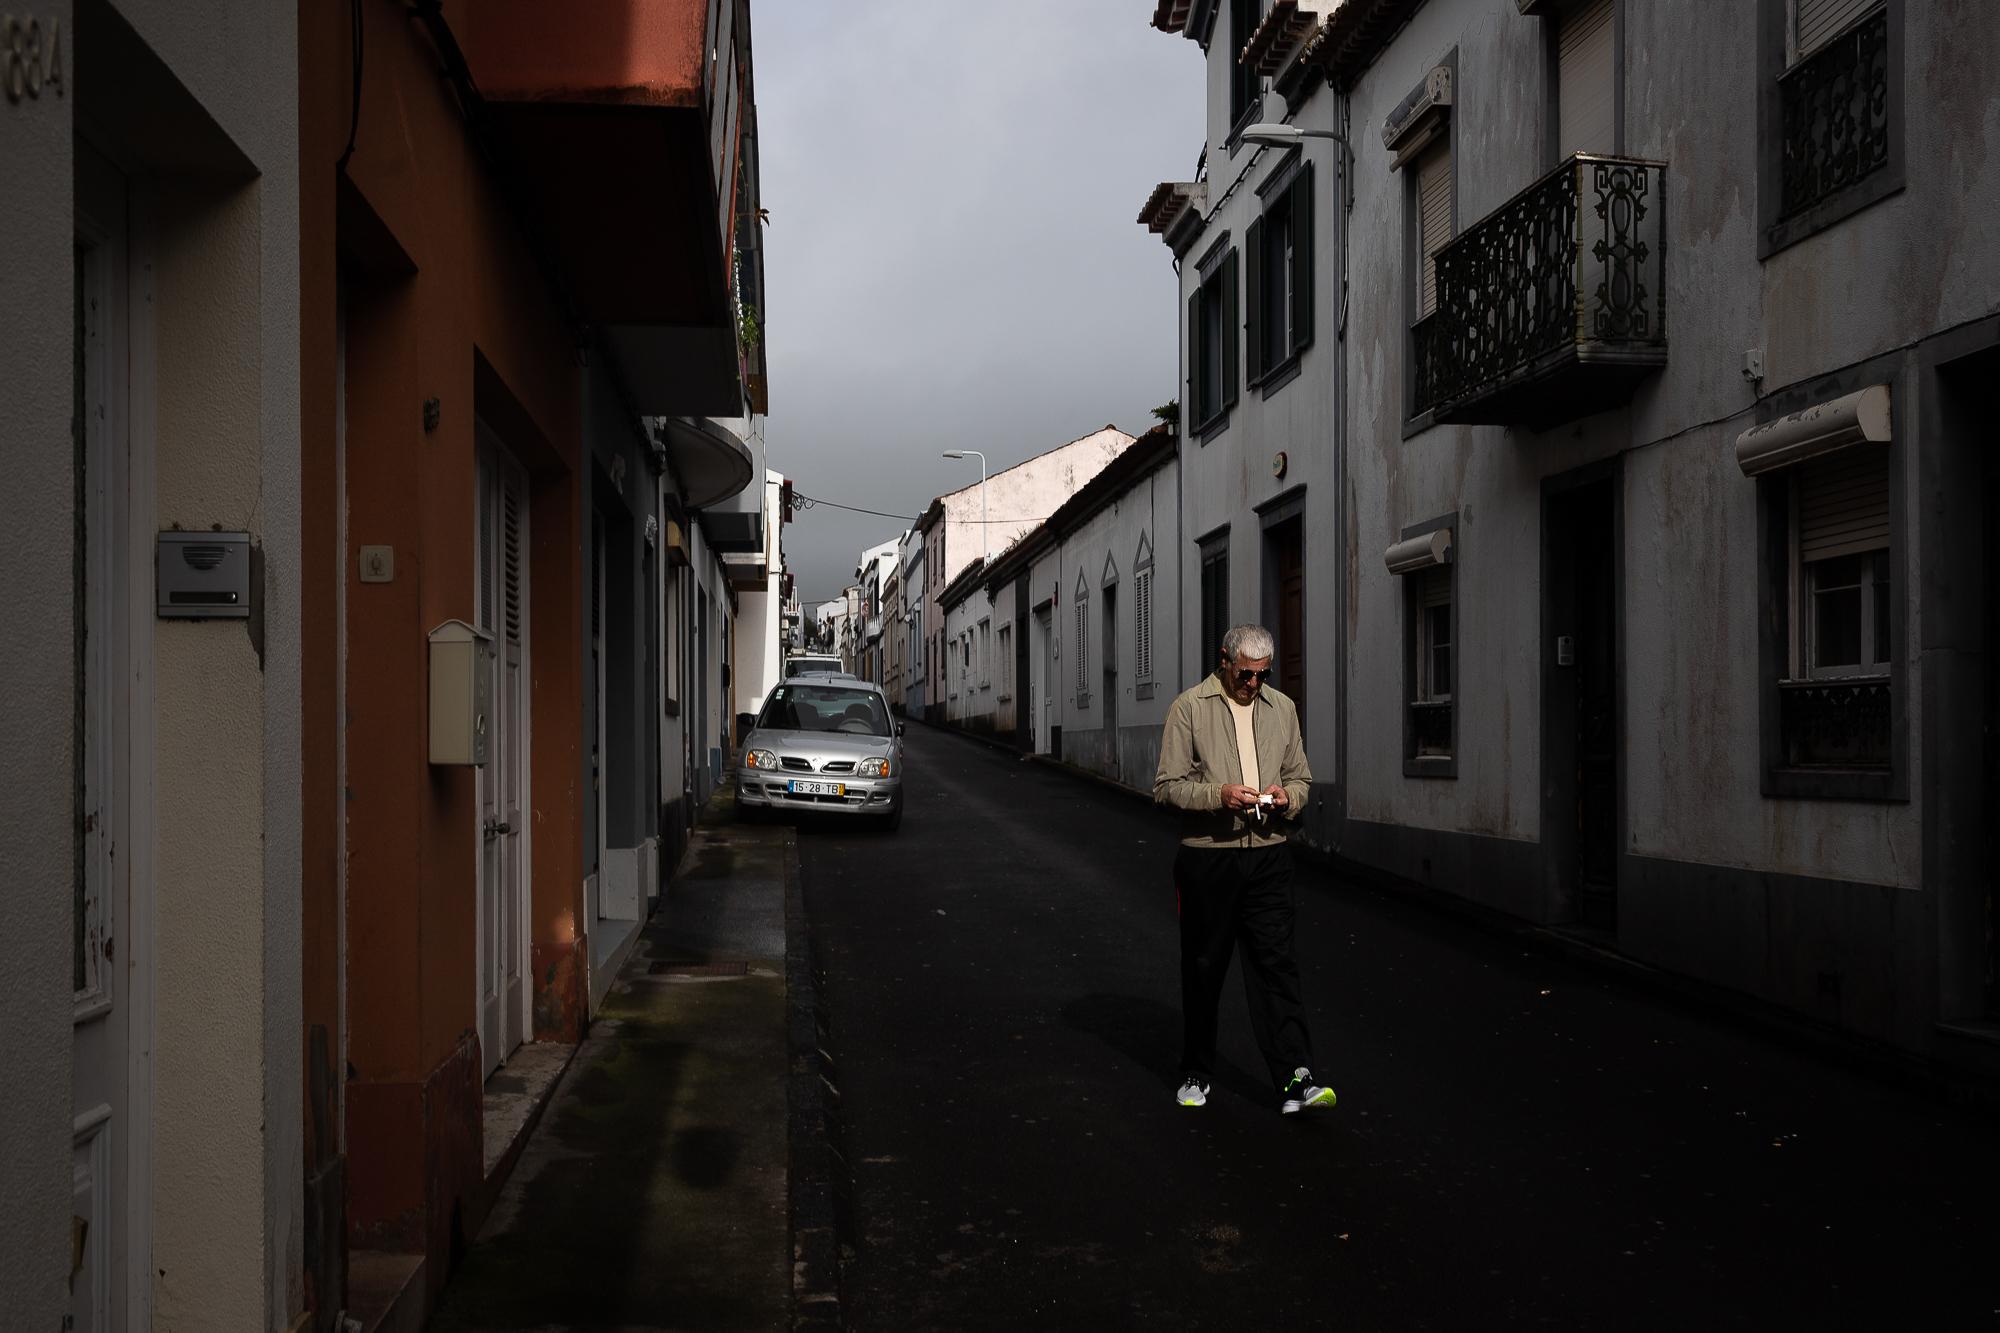 Jorge Machado goes on his morning walk routine around the streets of Ponta Delgada, Azores,...